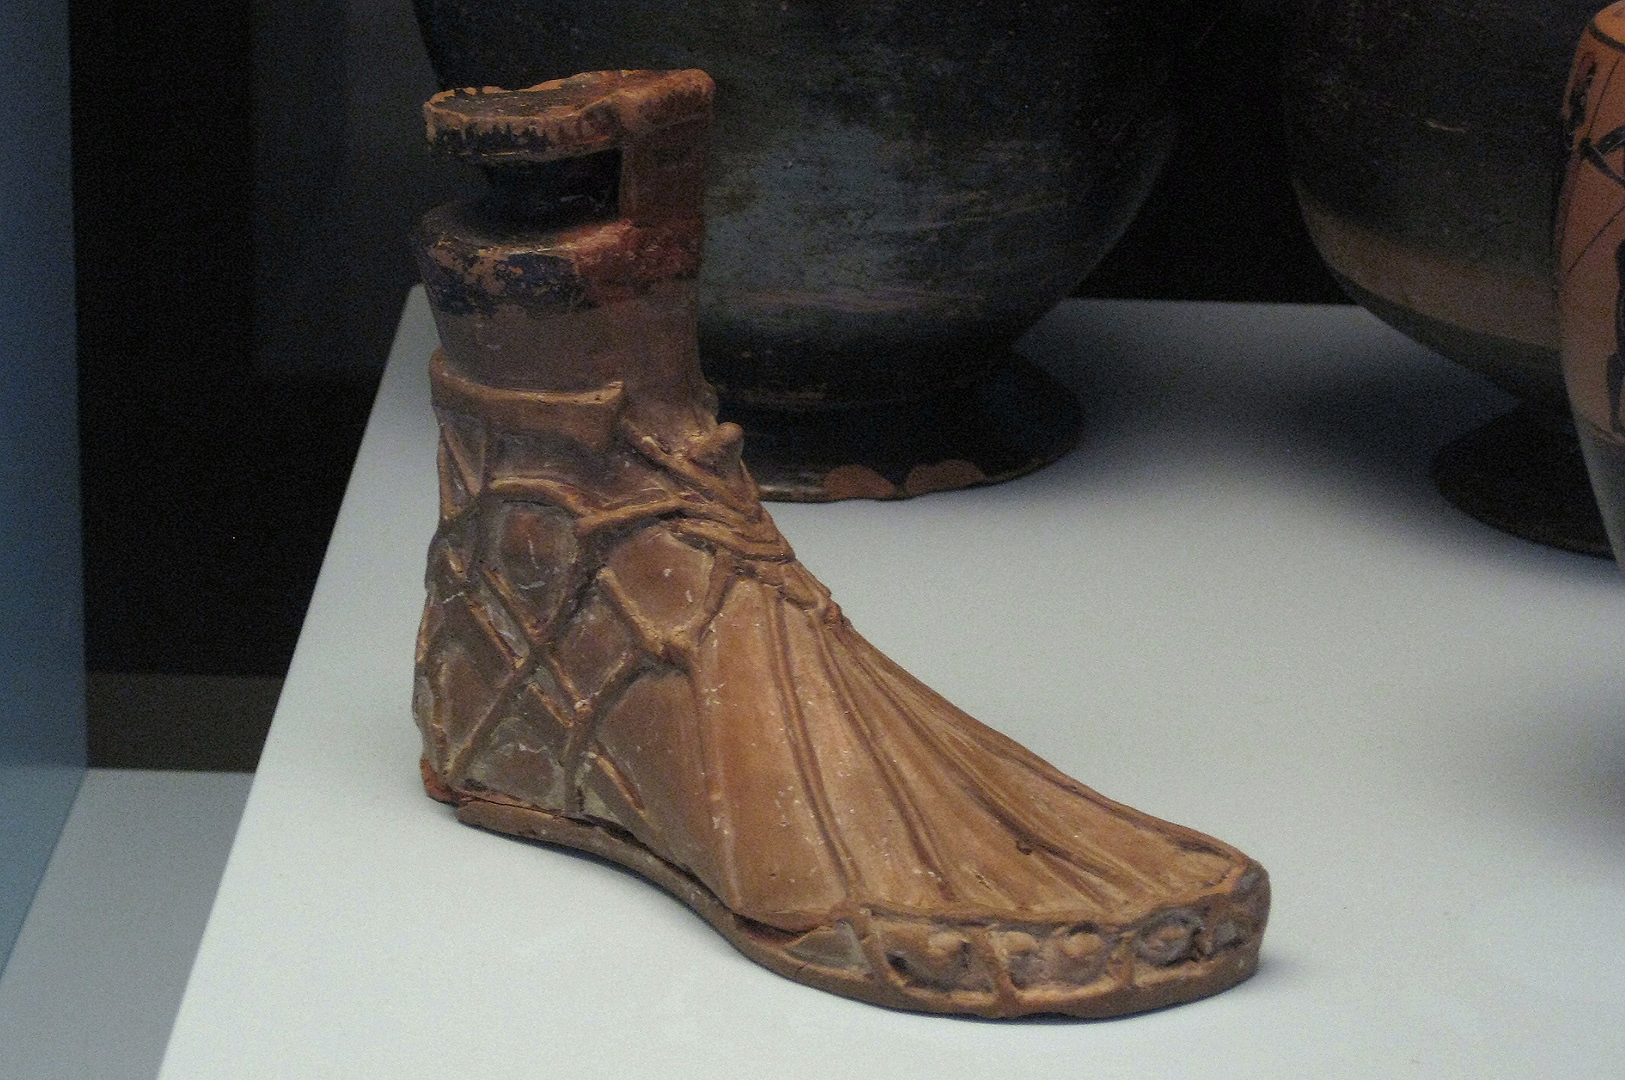 Terracotta voet, Paestum (Campanië. Italië); Foot, Paestum (Campania, Italy)